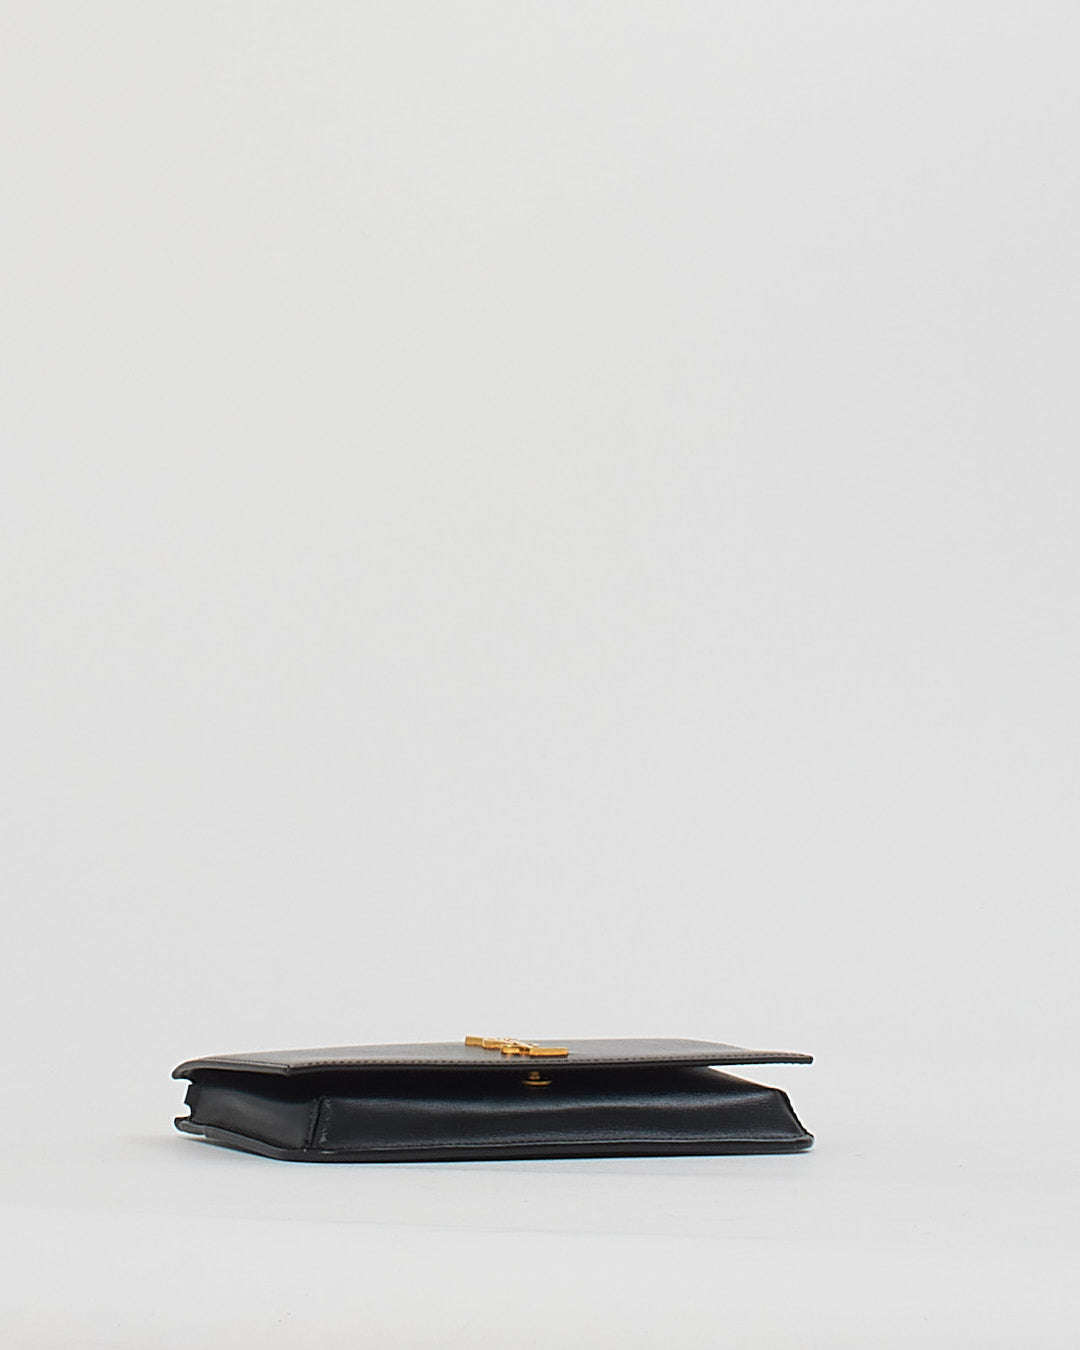 Saint Laurent Black Leather Logo Cassandre Phone Holder on Chain Bag